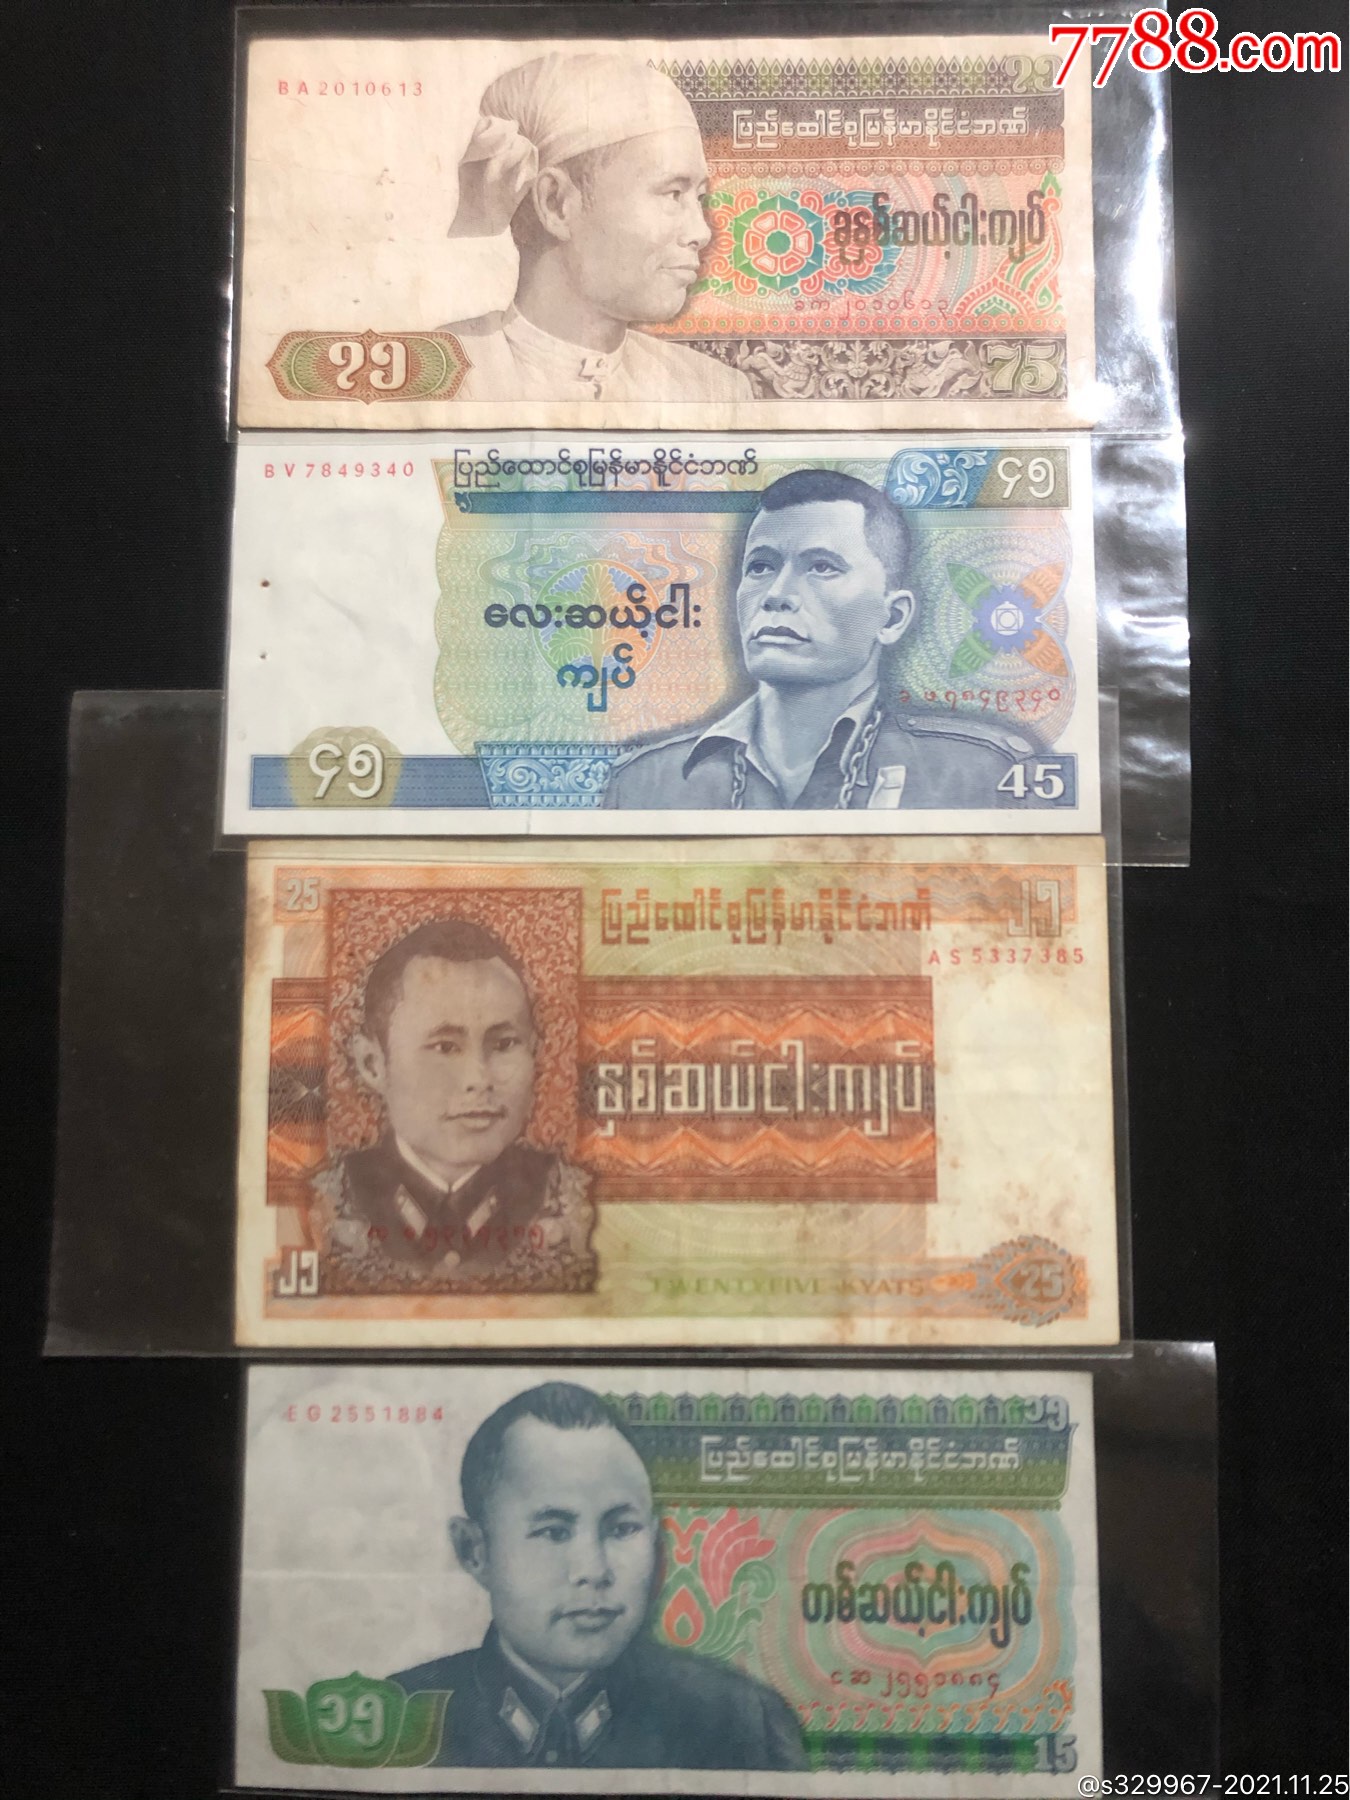 缅甸币长什么样的图片-图库-五毛网